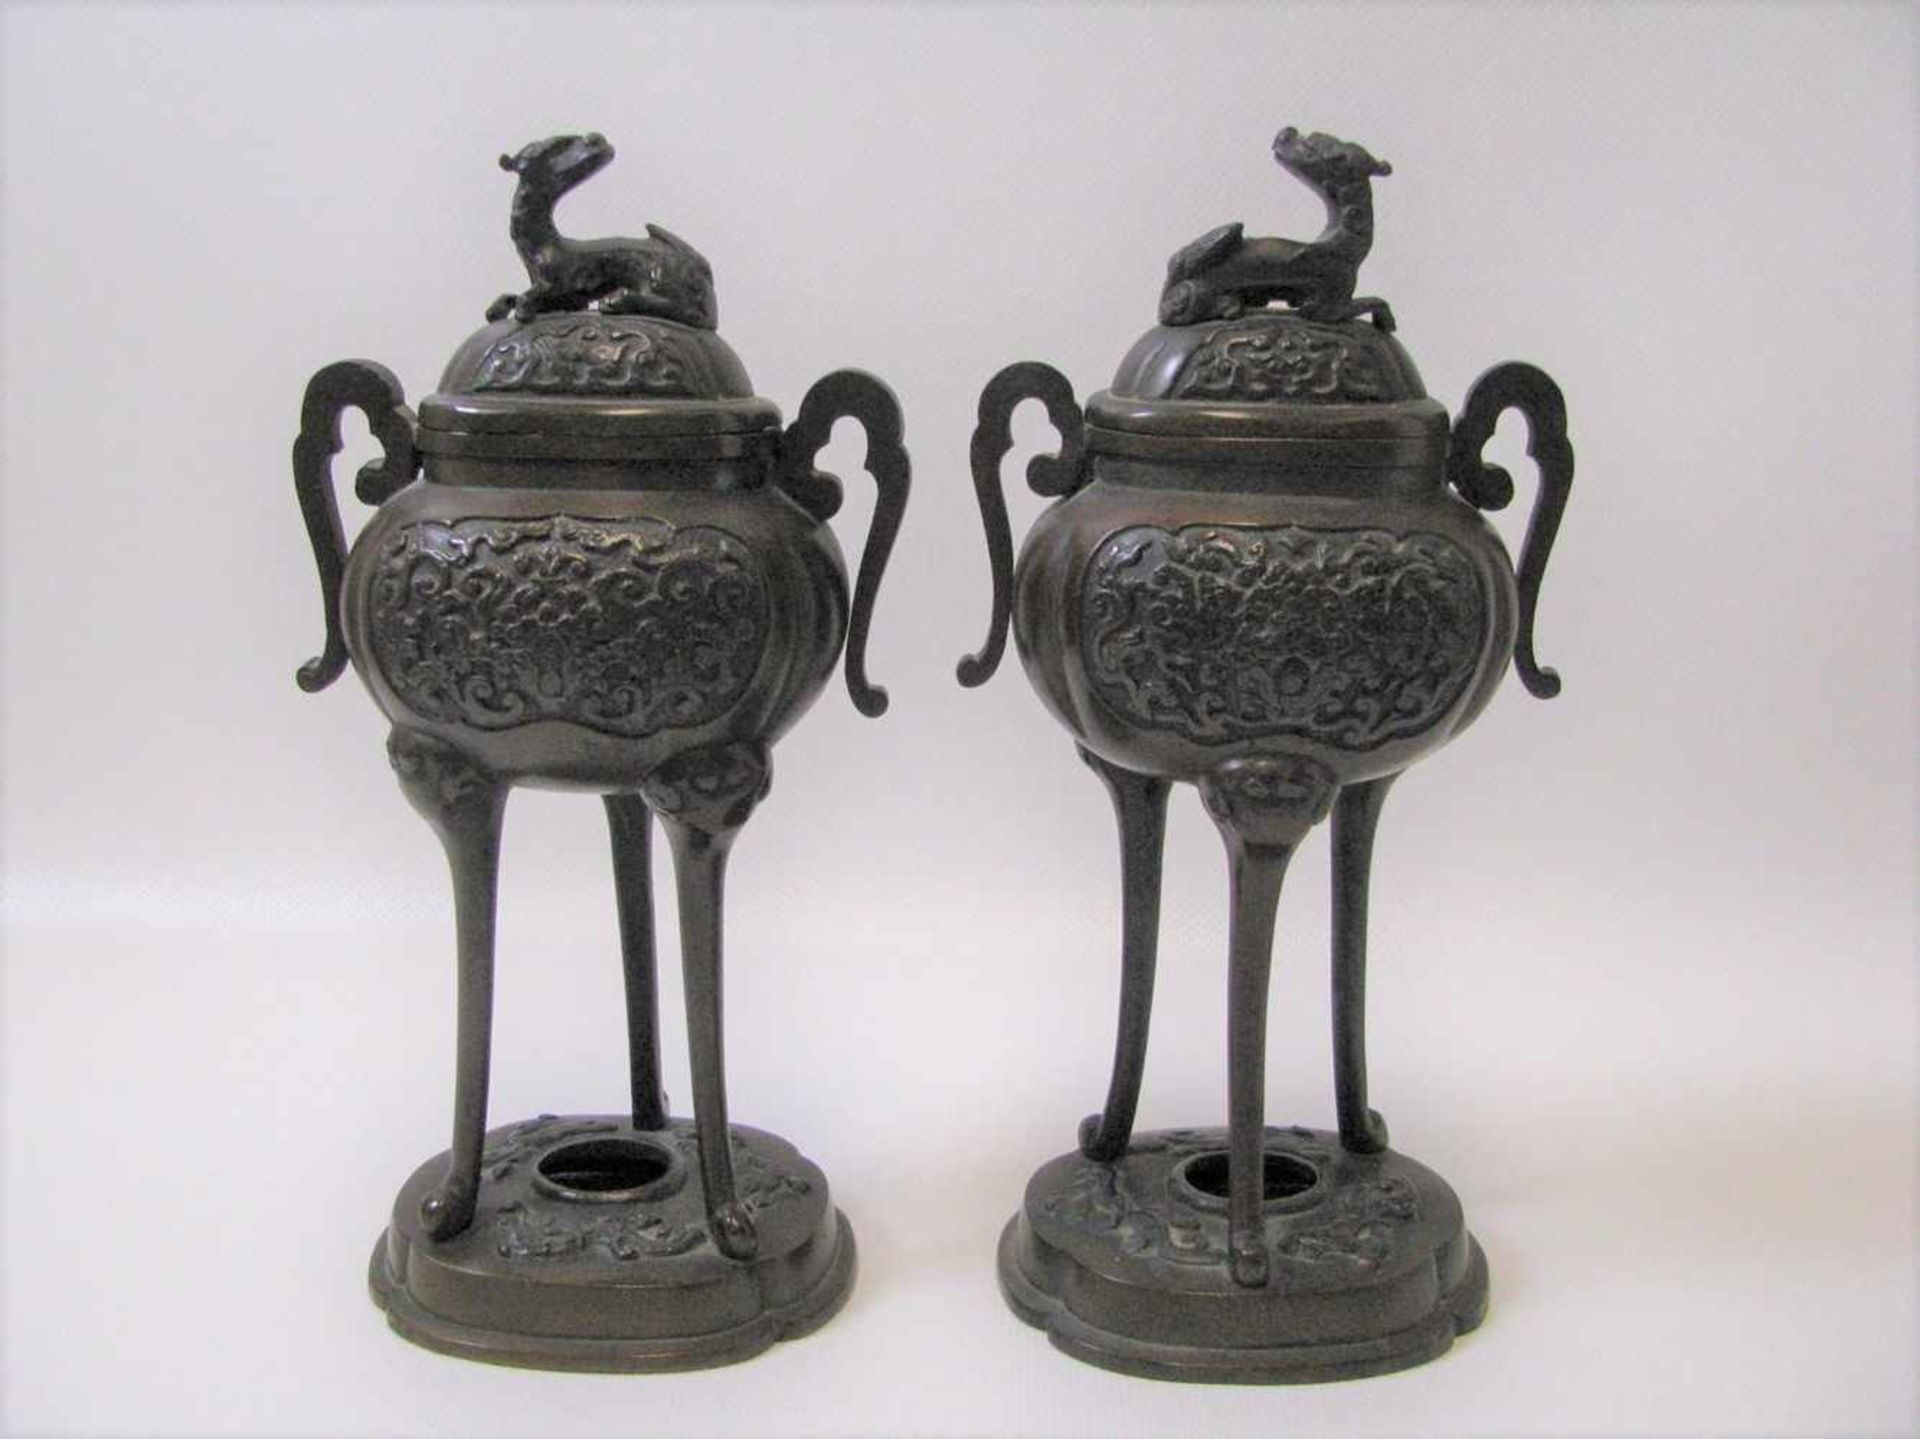 2 Räuchergefäße, sog. Koros, Japan, um 1900, Bronze reich verziert, Deckel mit aufgesetzten Fo-